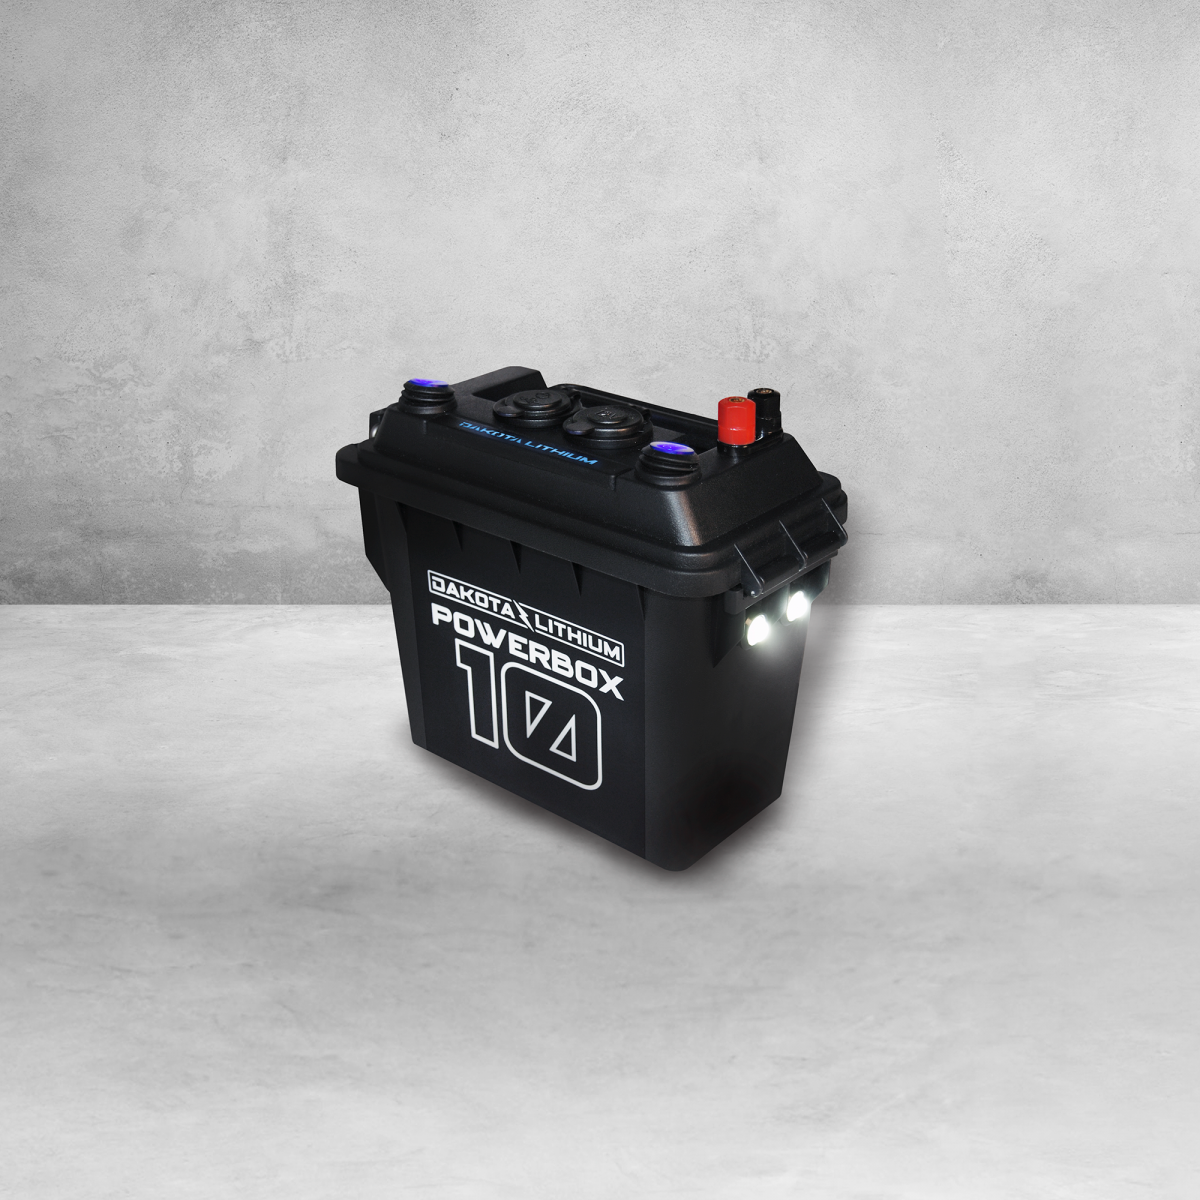 Akkupack PBA 12v 2.0Ah o-b. Lithium Battery Boxes. NINJABATT Power Box. 12v10.30.10.